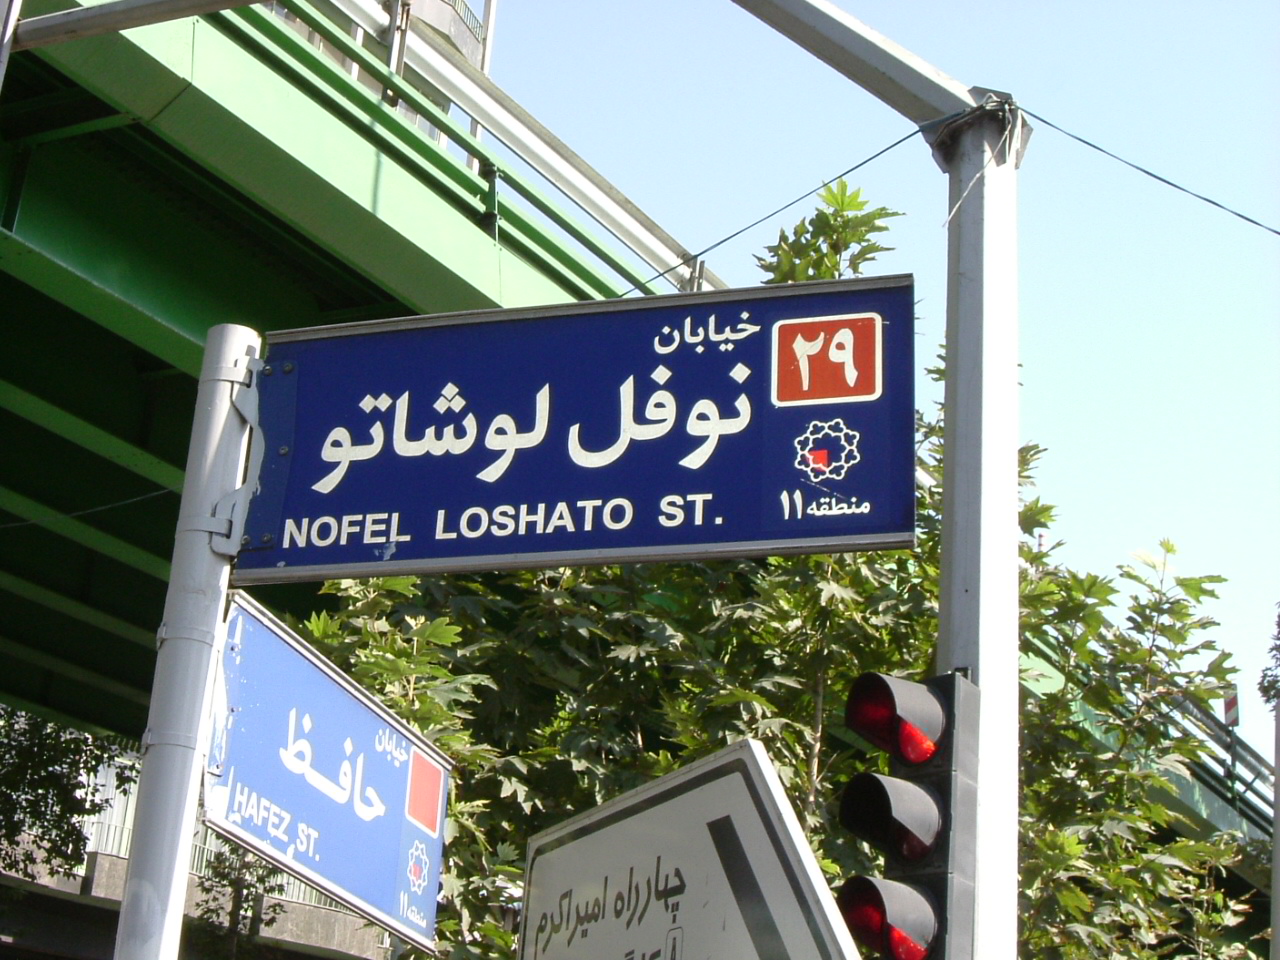 ساخت هتل ” هنر ایران” در خیابان نوفل لوشاتو